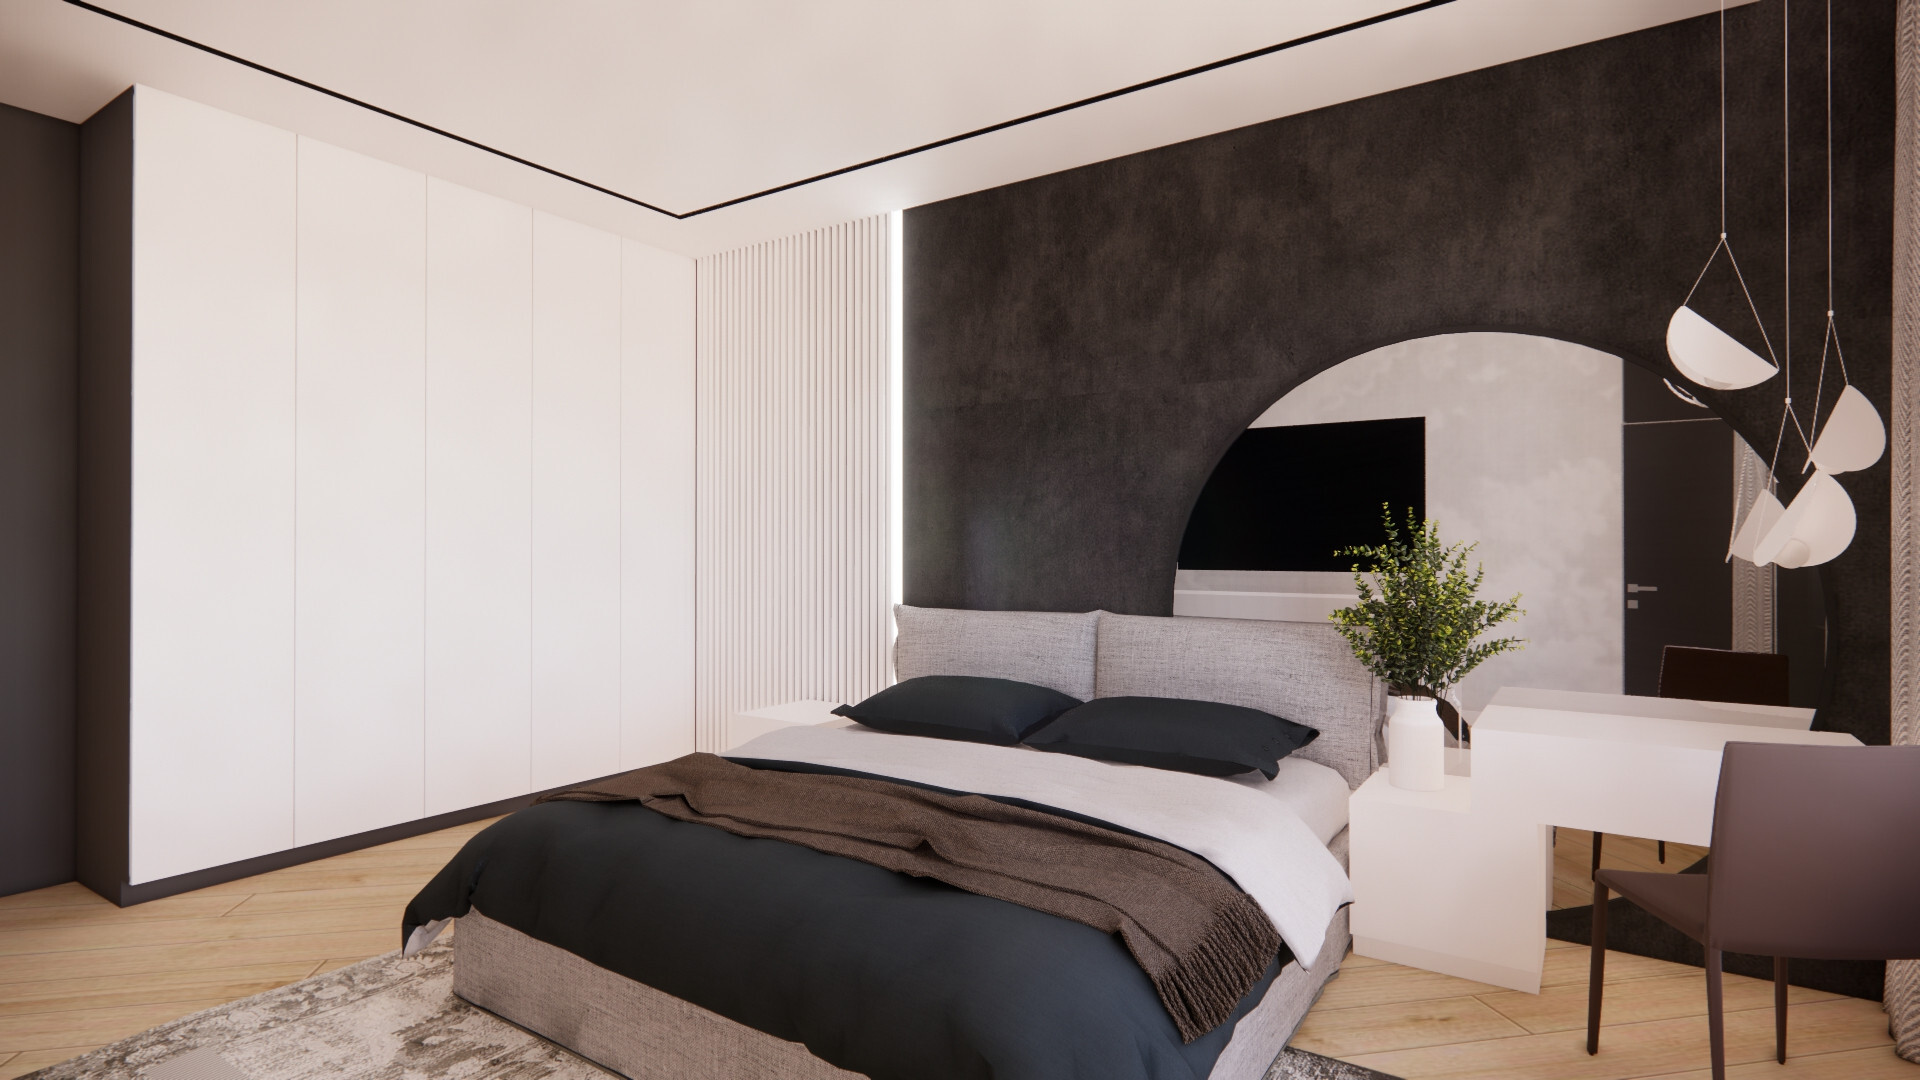 Интерьер спальни с кроватью в нише, бра над кроватью и светильниками над кроватью в стиле лофт